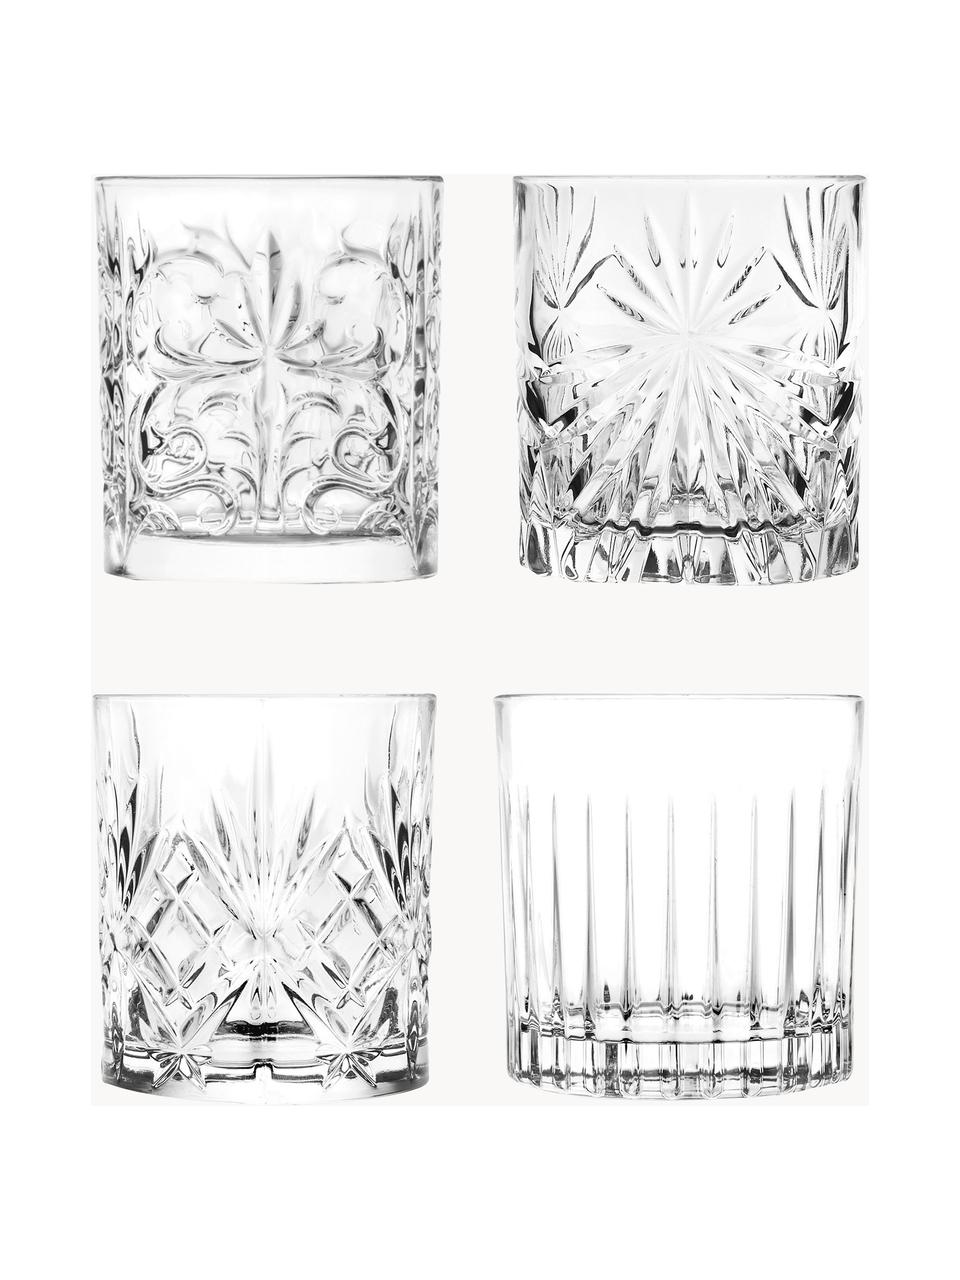 Sada křišťálových sklenic Bichiera, 4 díly, Křišťál, Transparentní, Ø 8 cm, V 9 cm, 310 ml